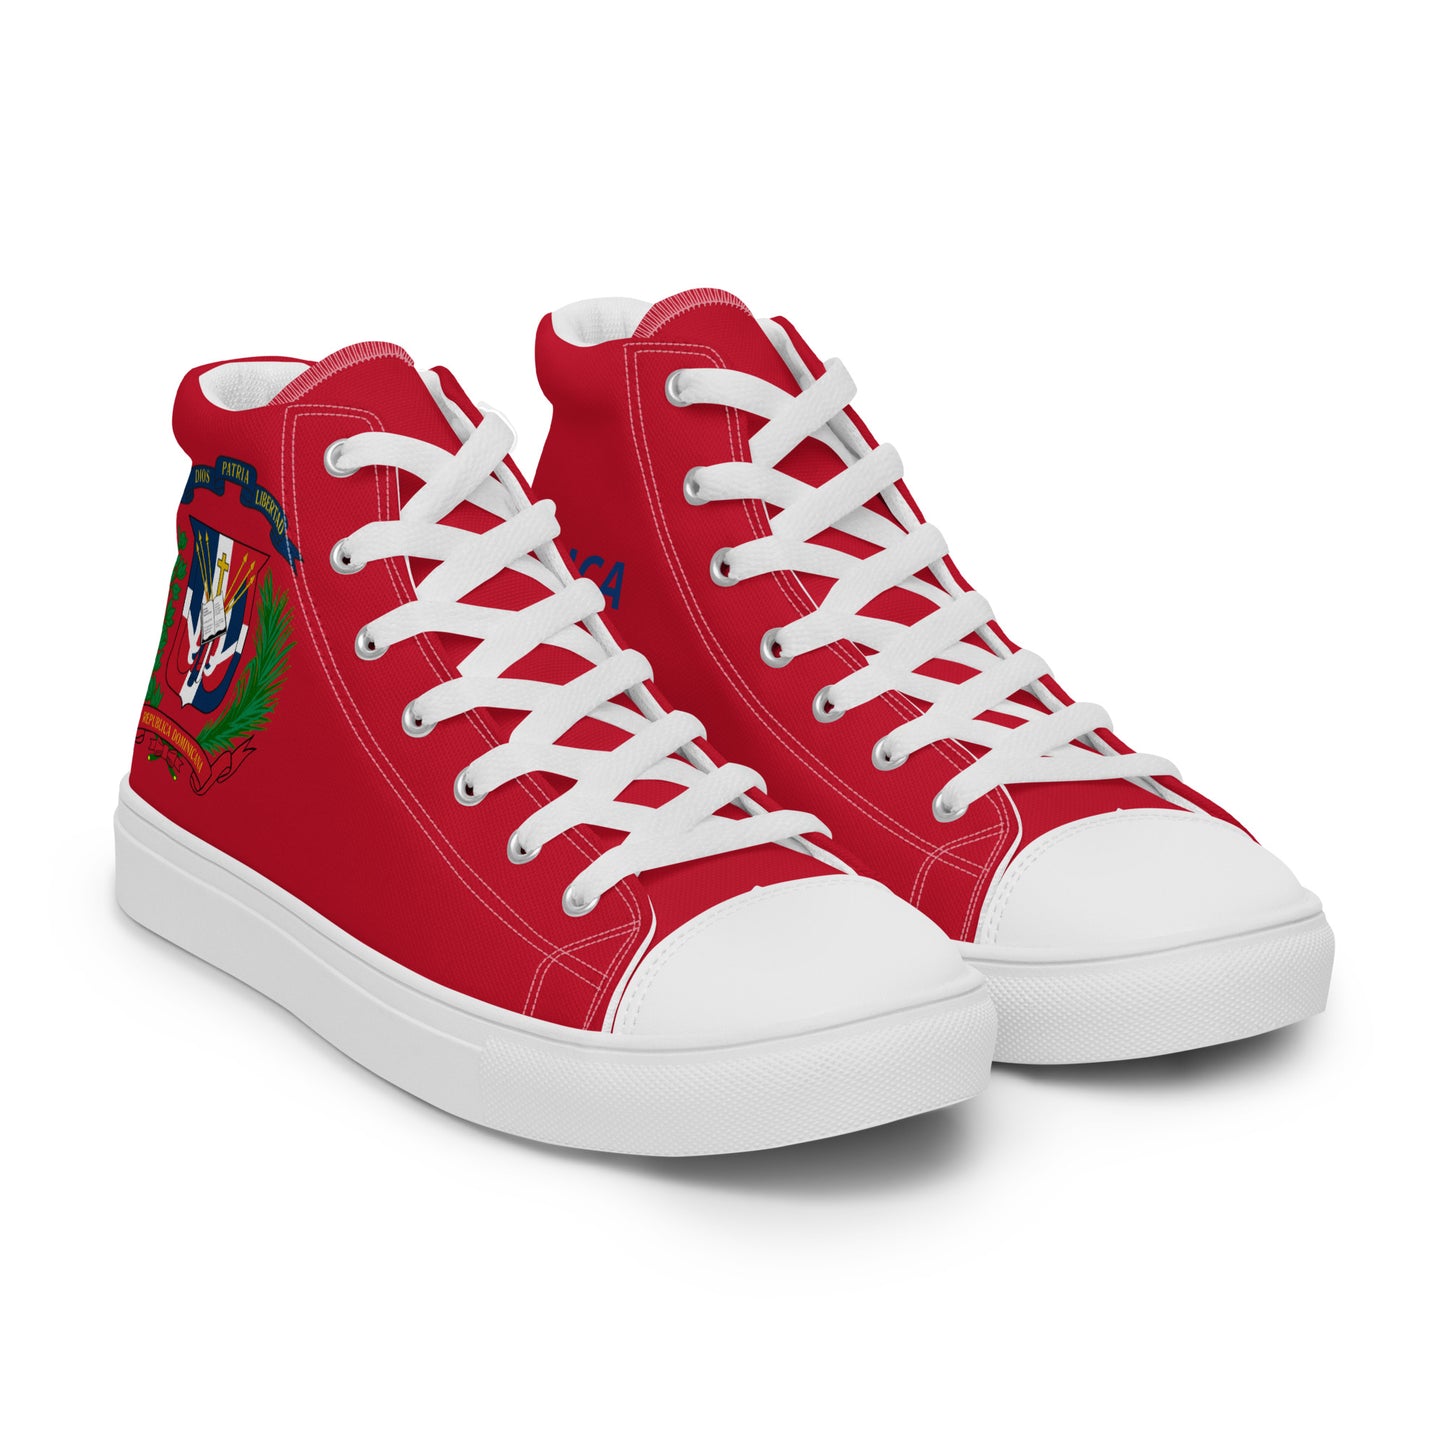 República Dominicana - Men - Red - High top shoes